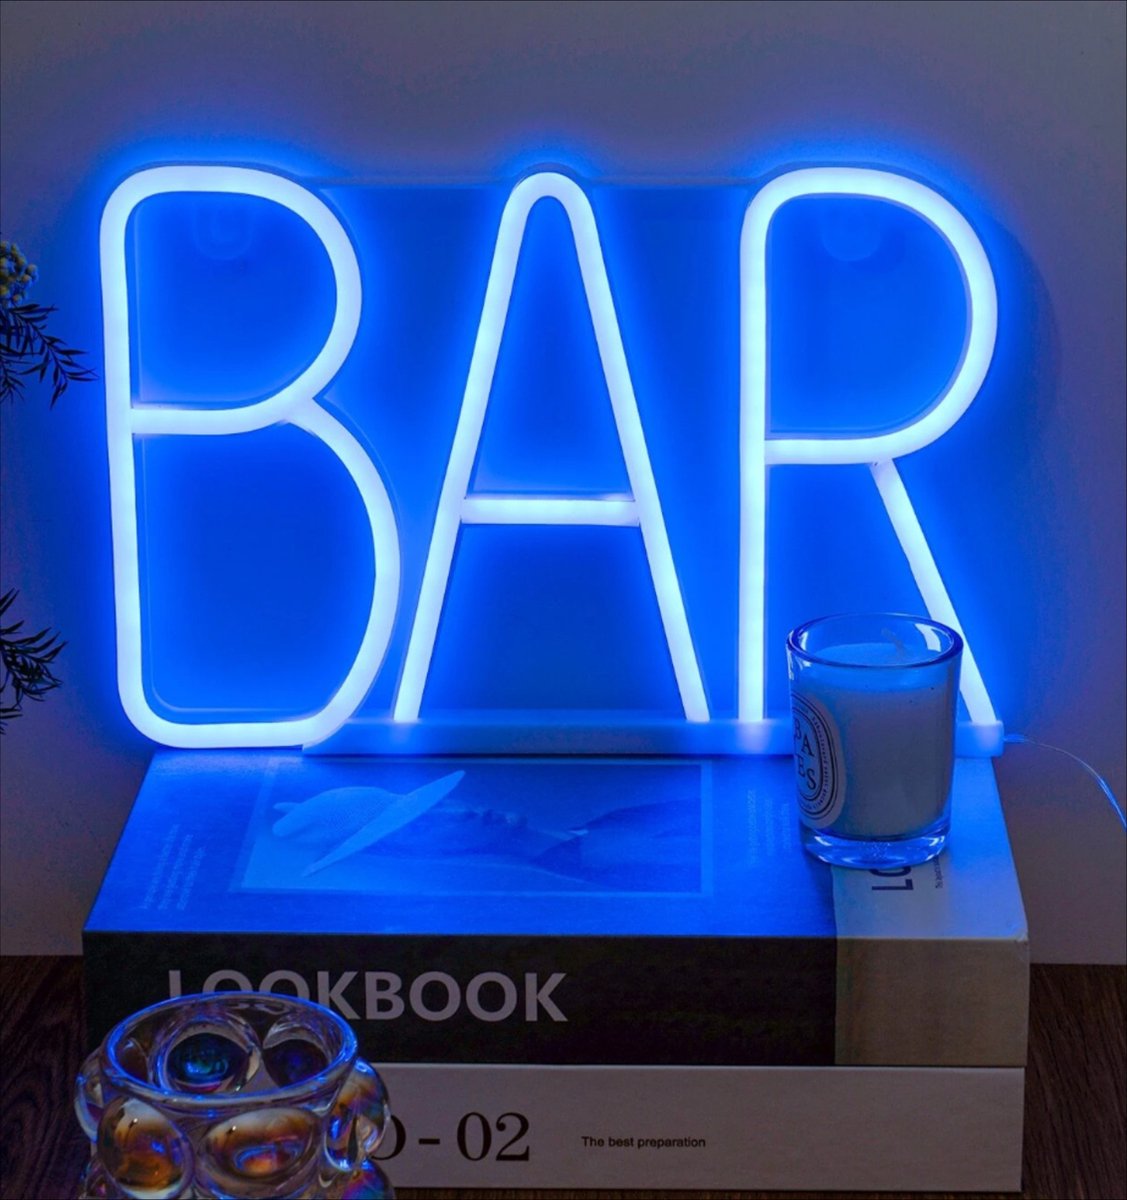 Neon verlichting bar - Bar - Neon wandlamp - Neon ligt - Led - Blauw - Sfeerverlichting - Neonlicht - Neon lamp - Neonverlichting - Neon verlichting - Tafellampen - Verlichting - Kindertafellampen - Kinderlamp – Kinderkamer – Bar verlichting